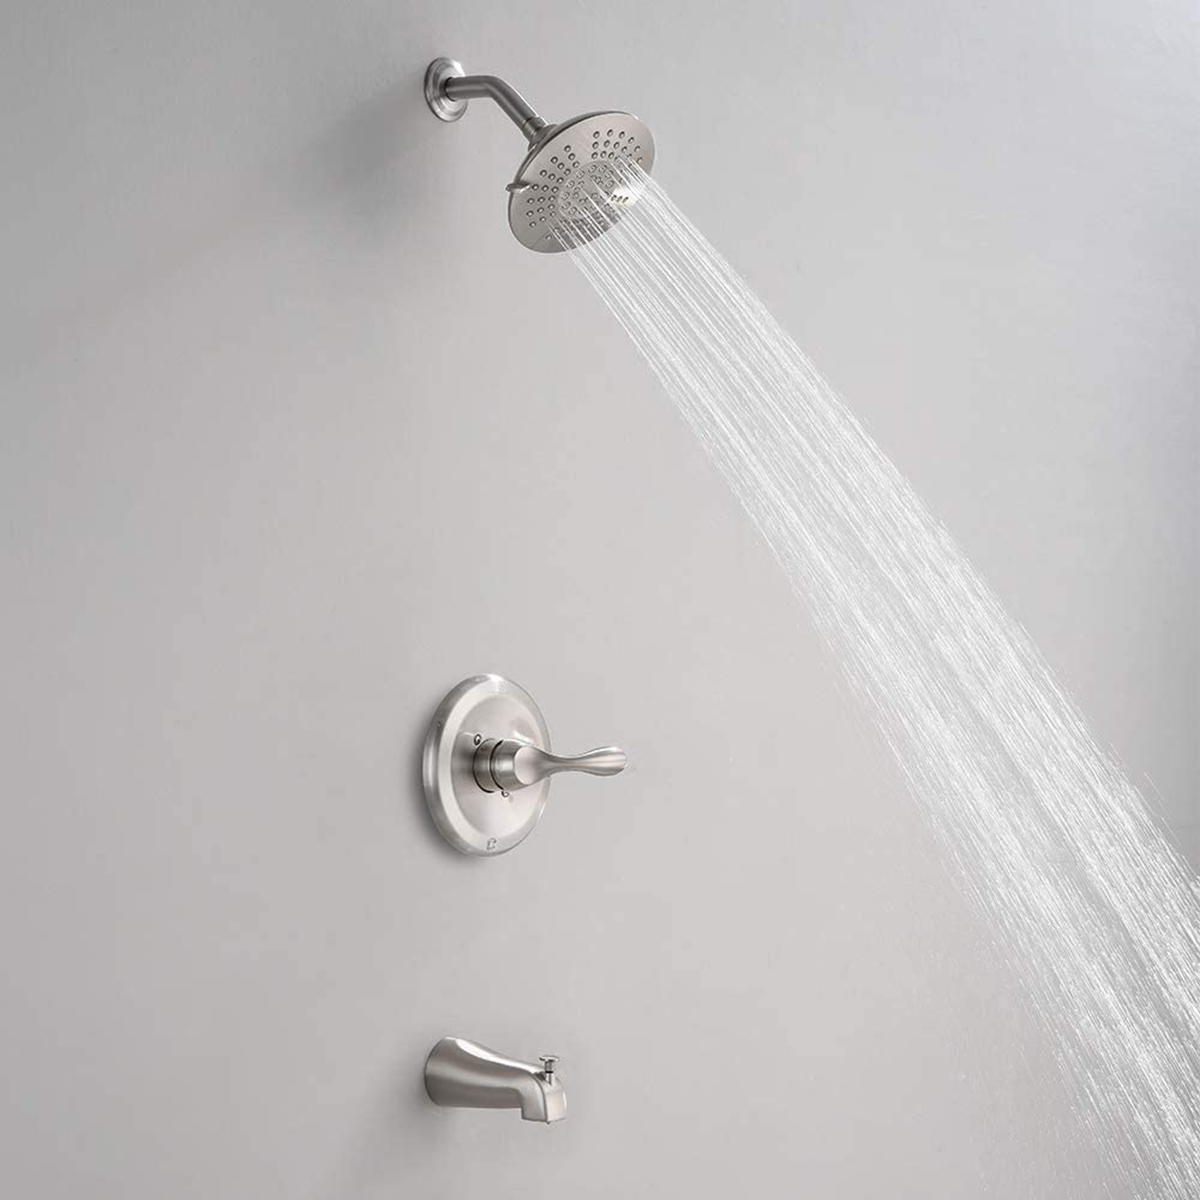 Sistema de ducha Aquacubic, juego de grifo de ducha y bañera montado en la pared con desviador de botón